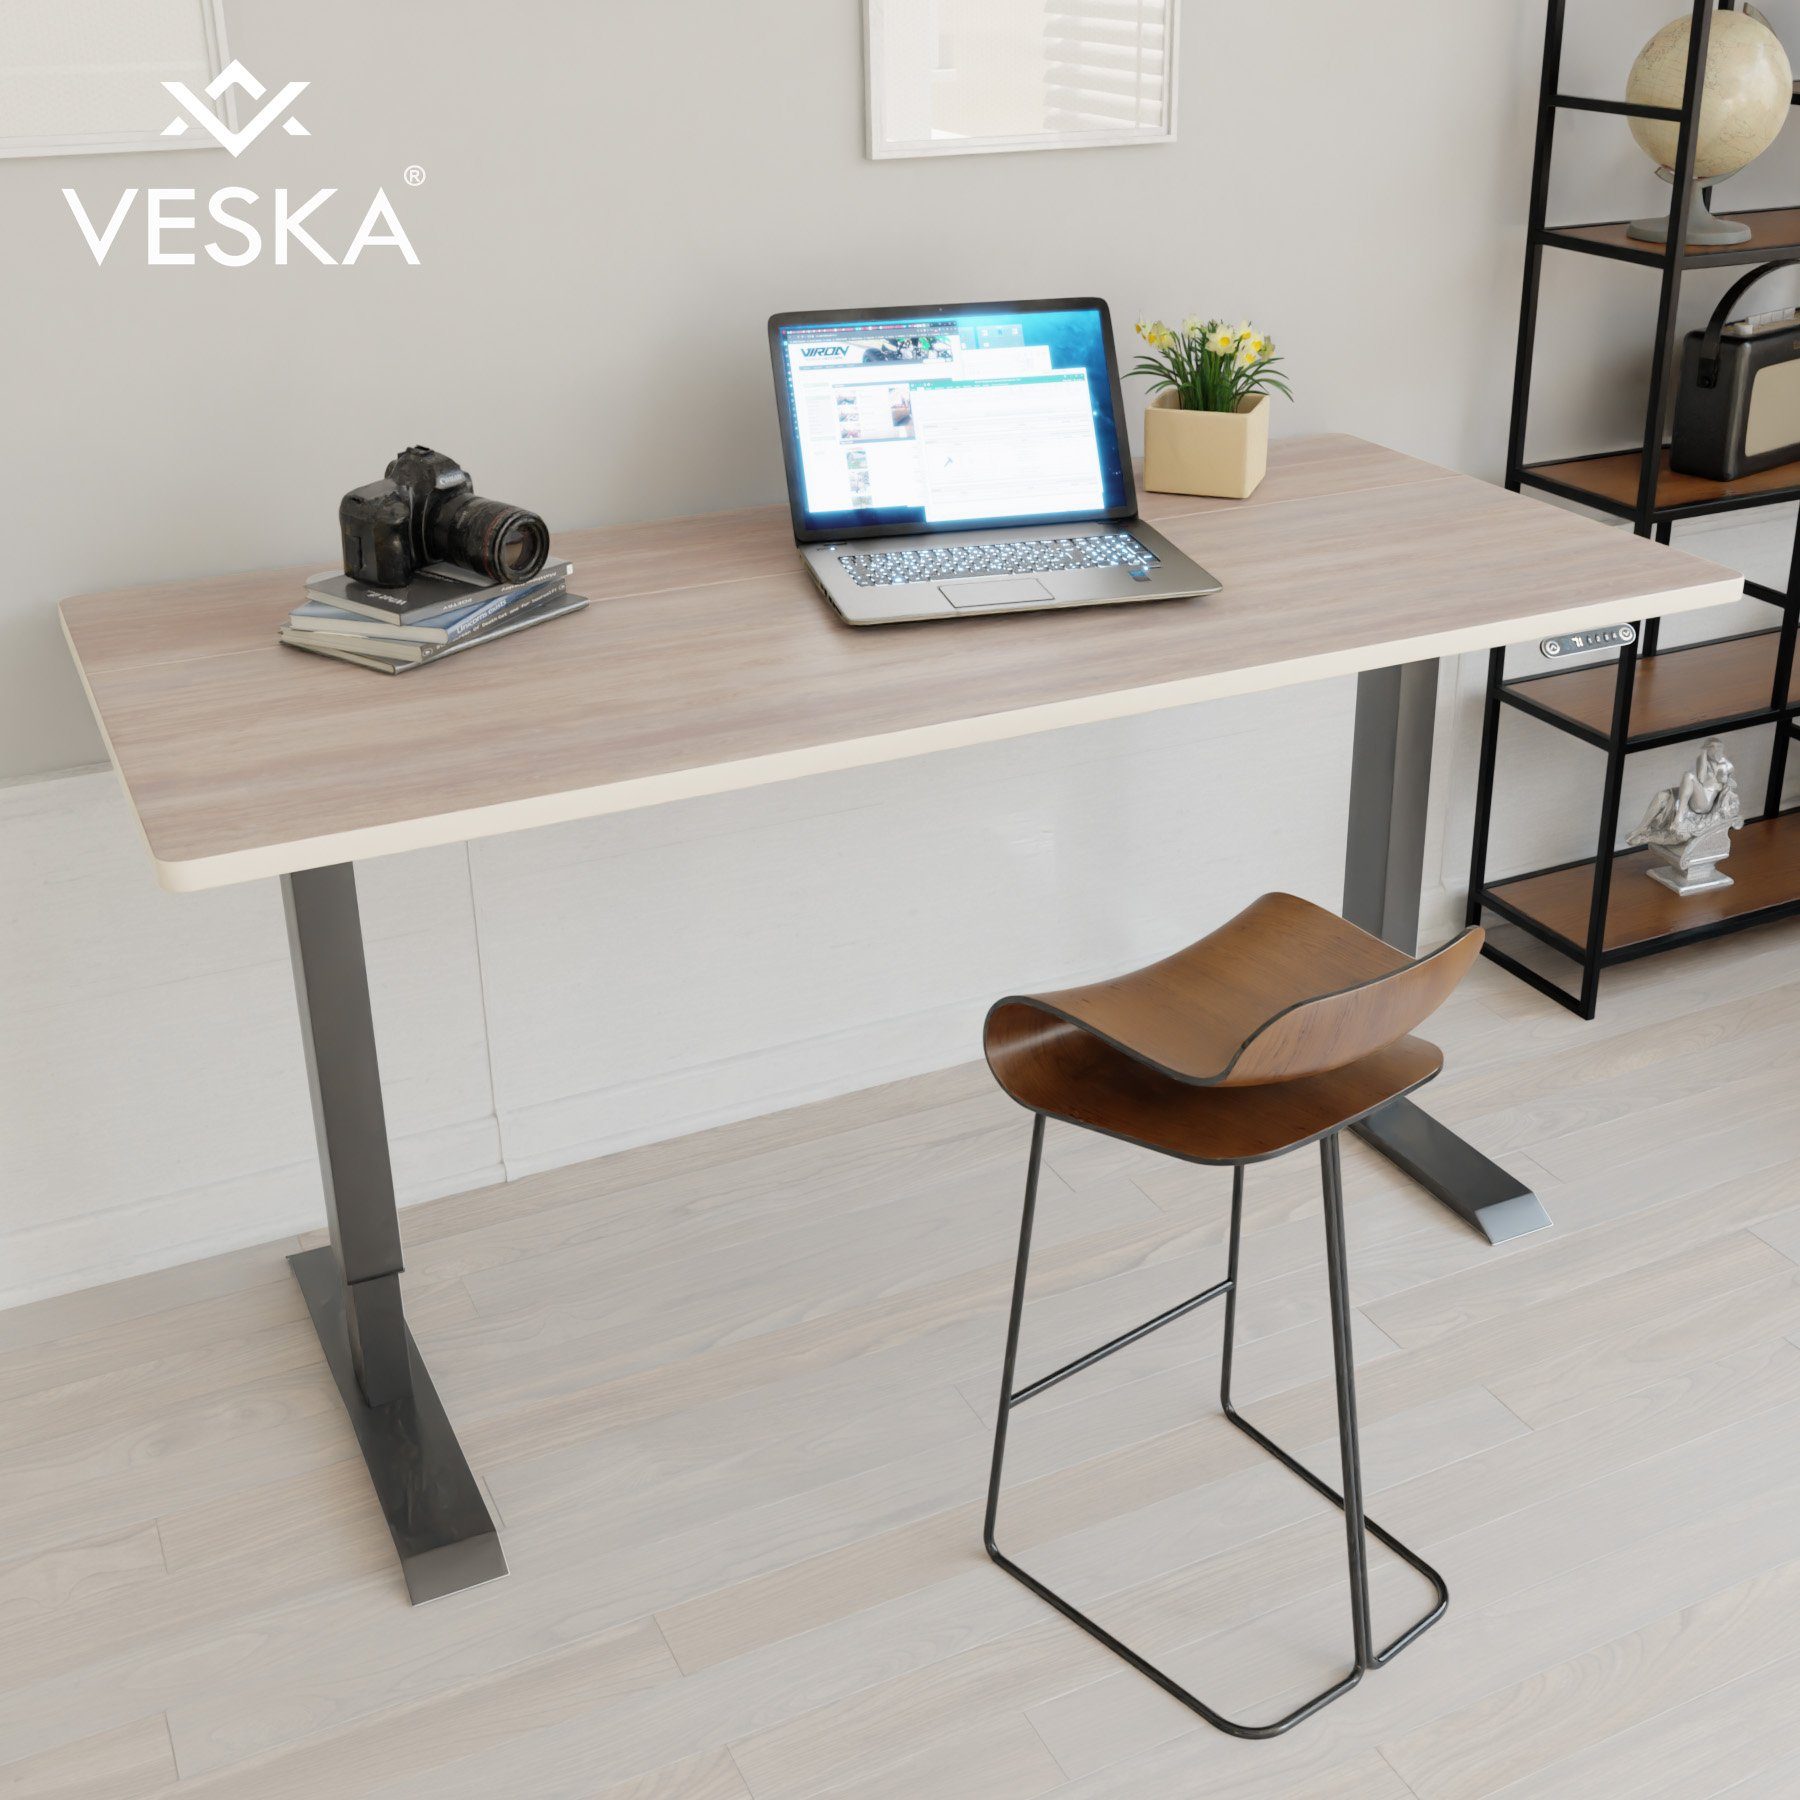 VESKA Schreibtisch Höhenverstellbar 140 x 70 cm - Bürotisch Elektrisch mit Touchscreen - Sitz- & Stehpult Home Office Anthrazit | Eiche